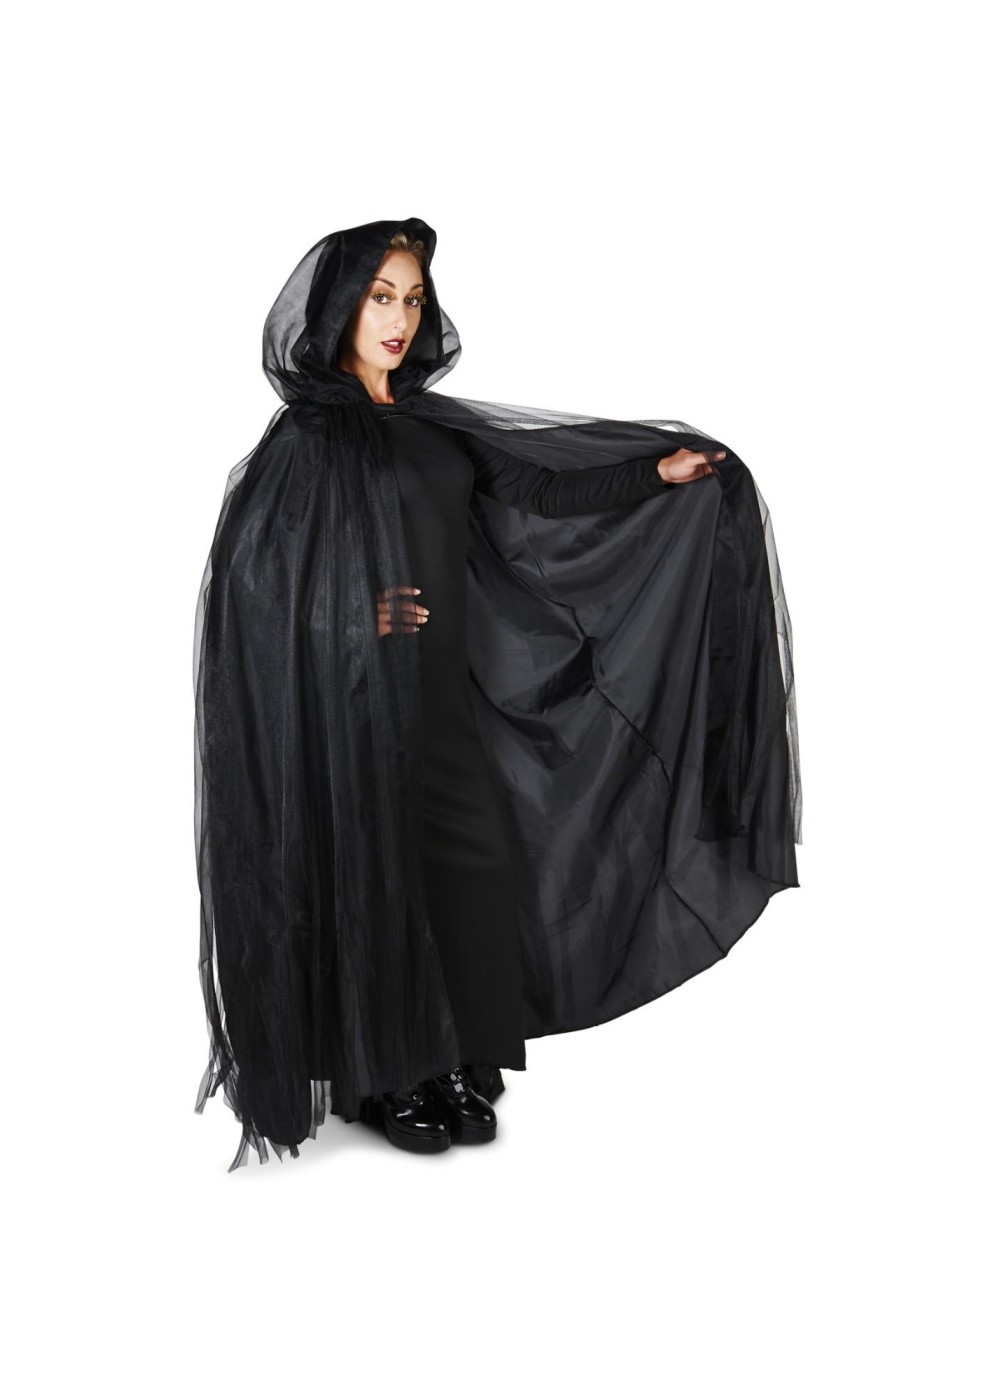 Black Hooded Womens Mesh Cloak